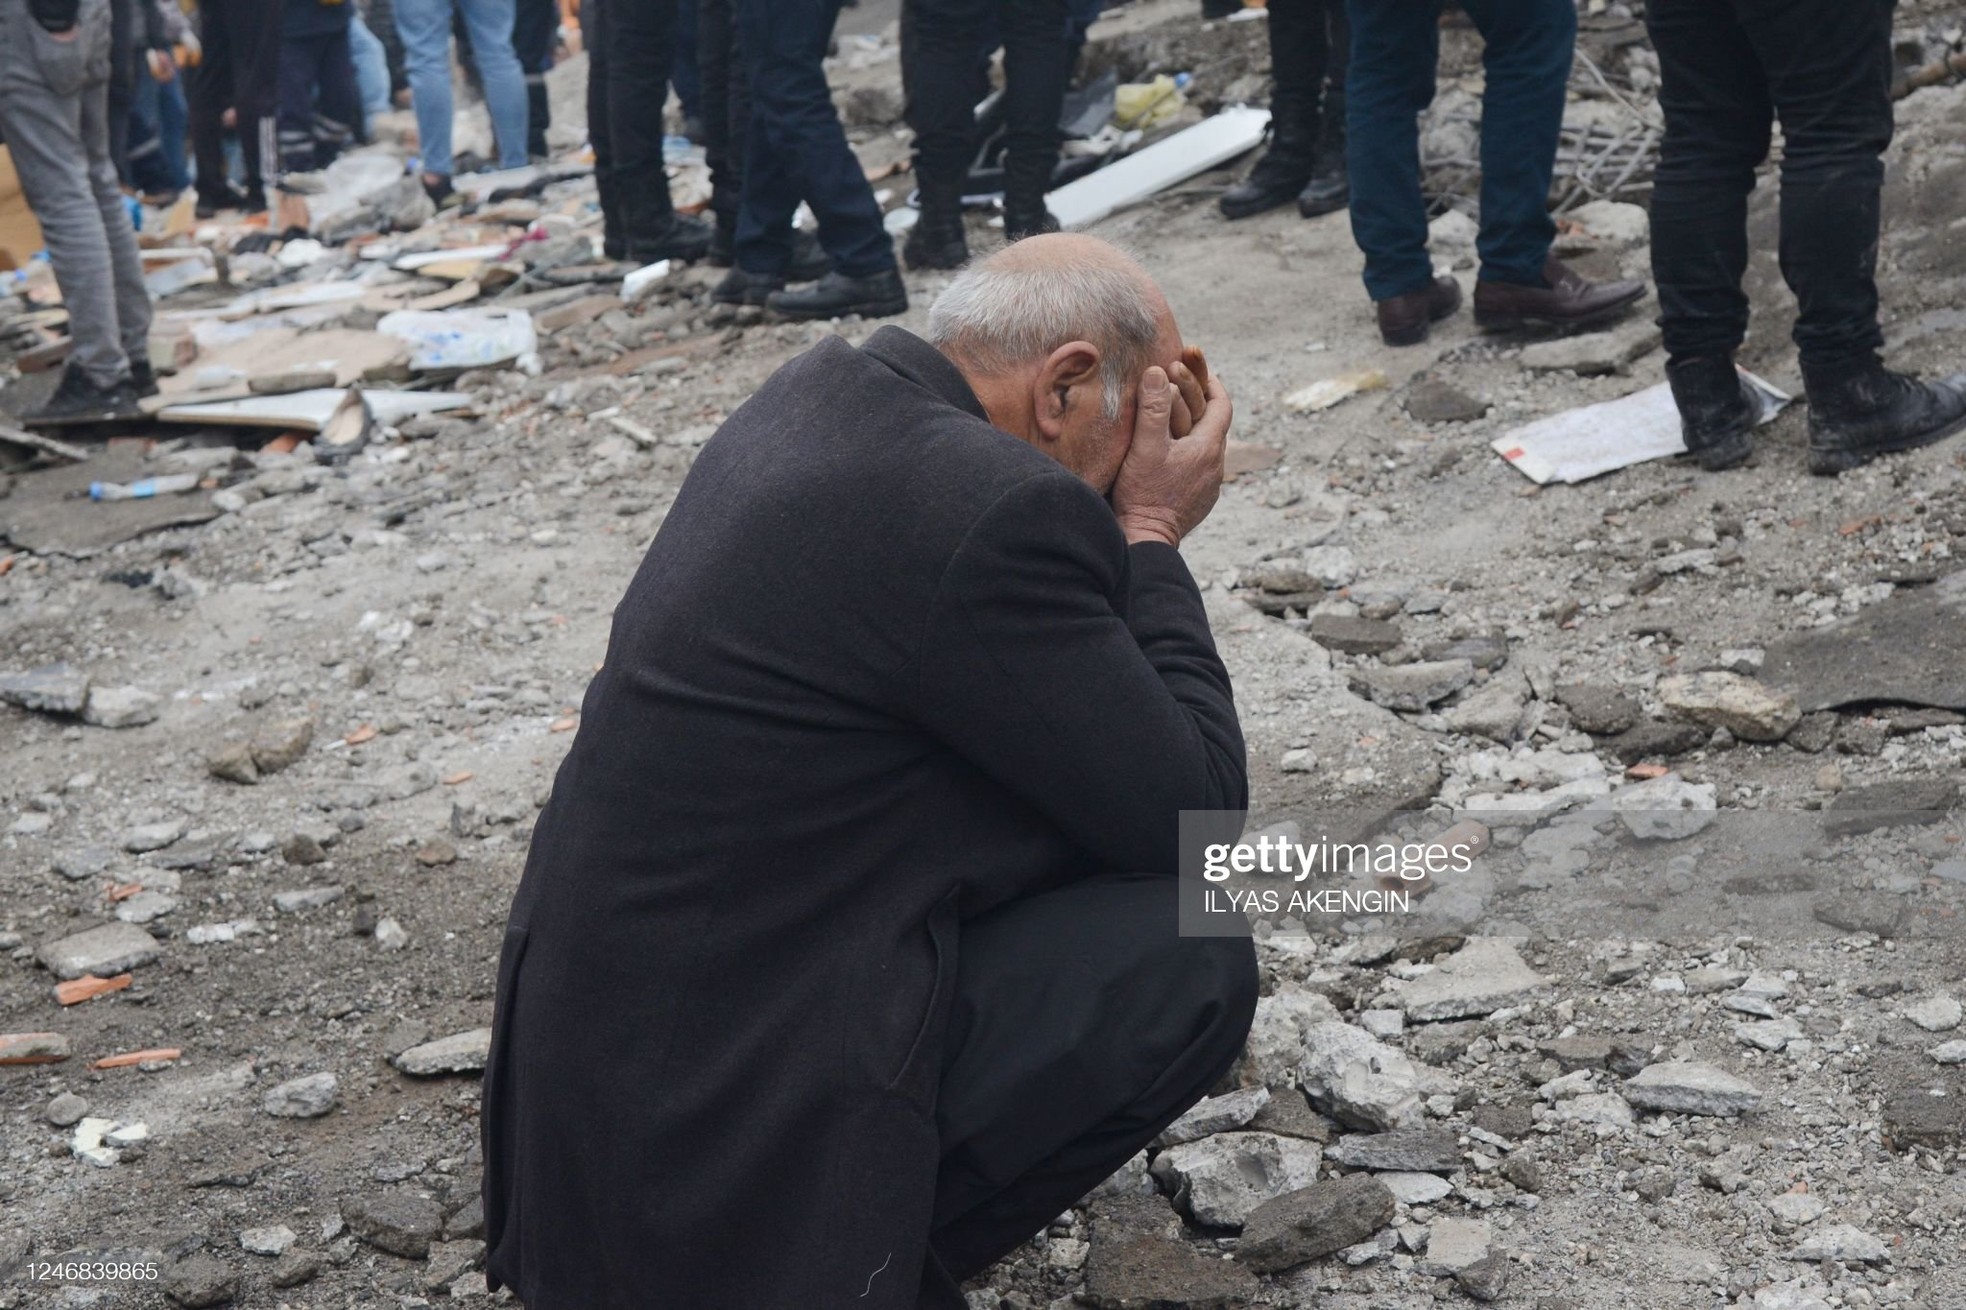 Rơi nước mắt cảnh người dân Thổ Nhĩ Kỳ thẫn thờ bên những tòa nhà vỡ vụn-21